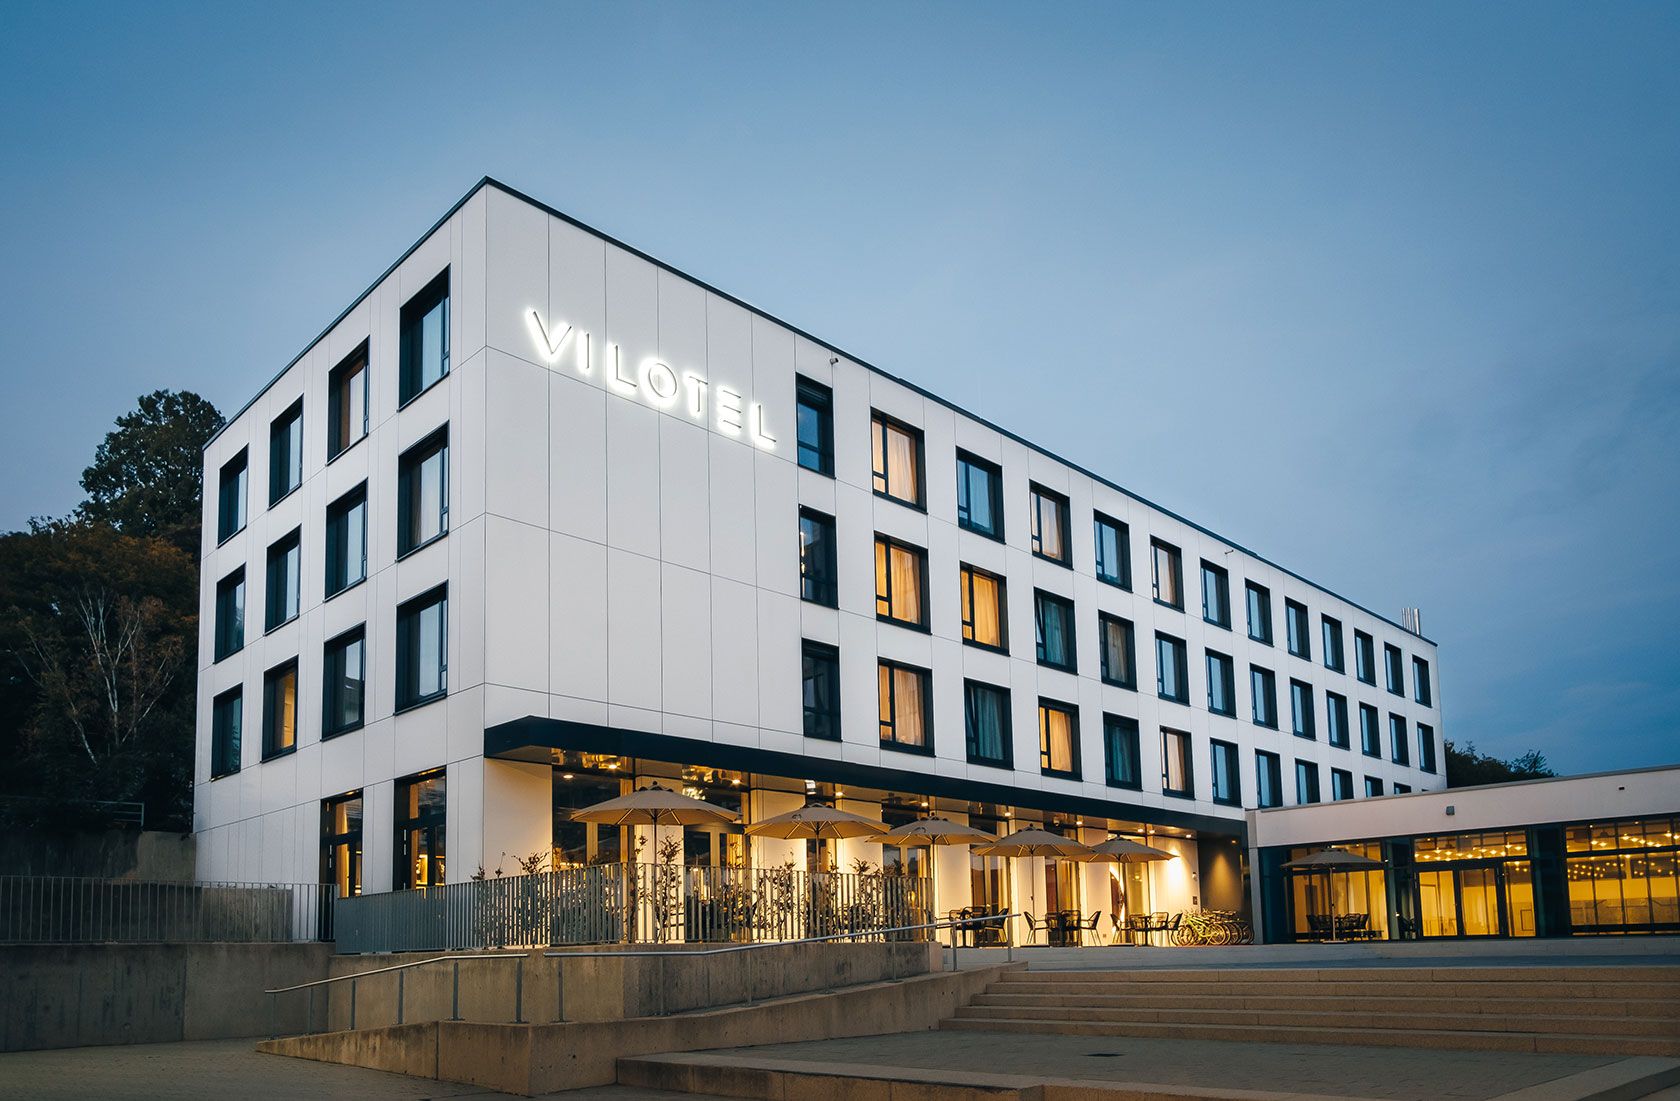 Hotel Vilotel bei Aalen